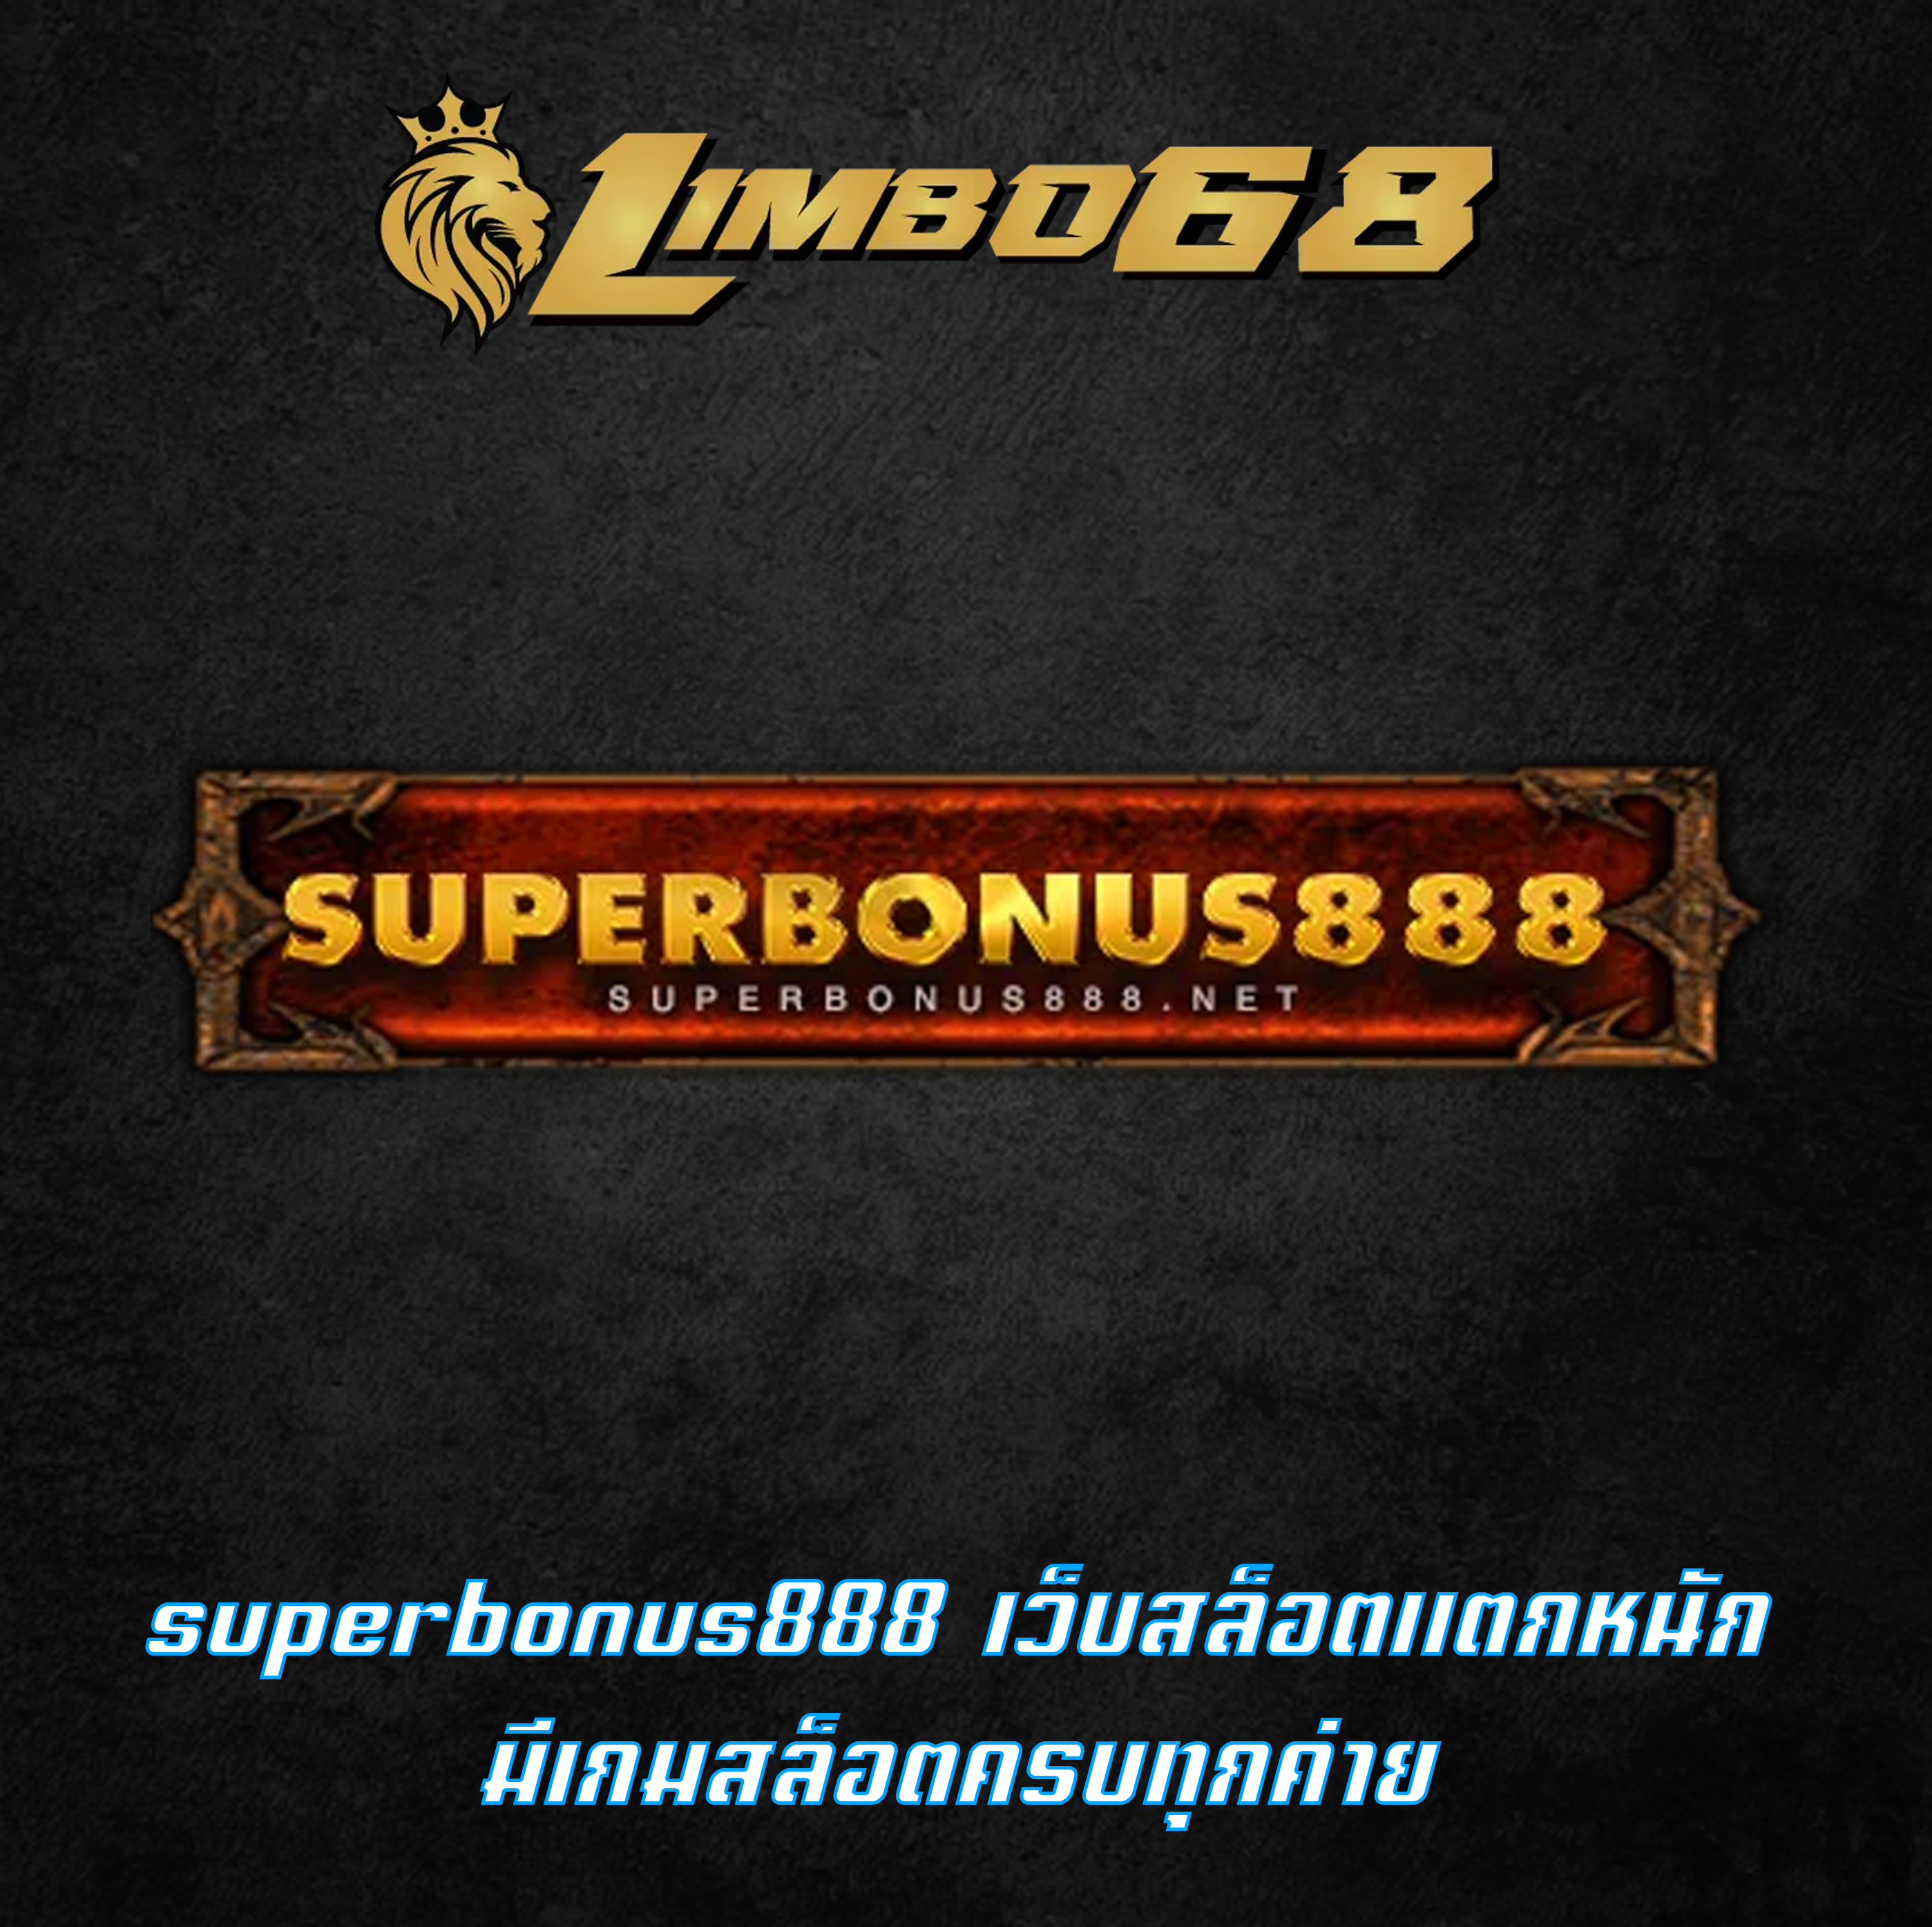 superbonus888 เว็บสล็อตแตกหนัก มีเกมสล็อตครบทุกค่าย